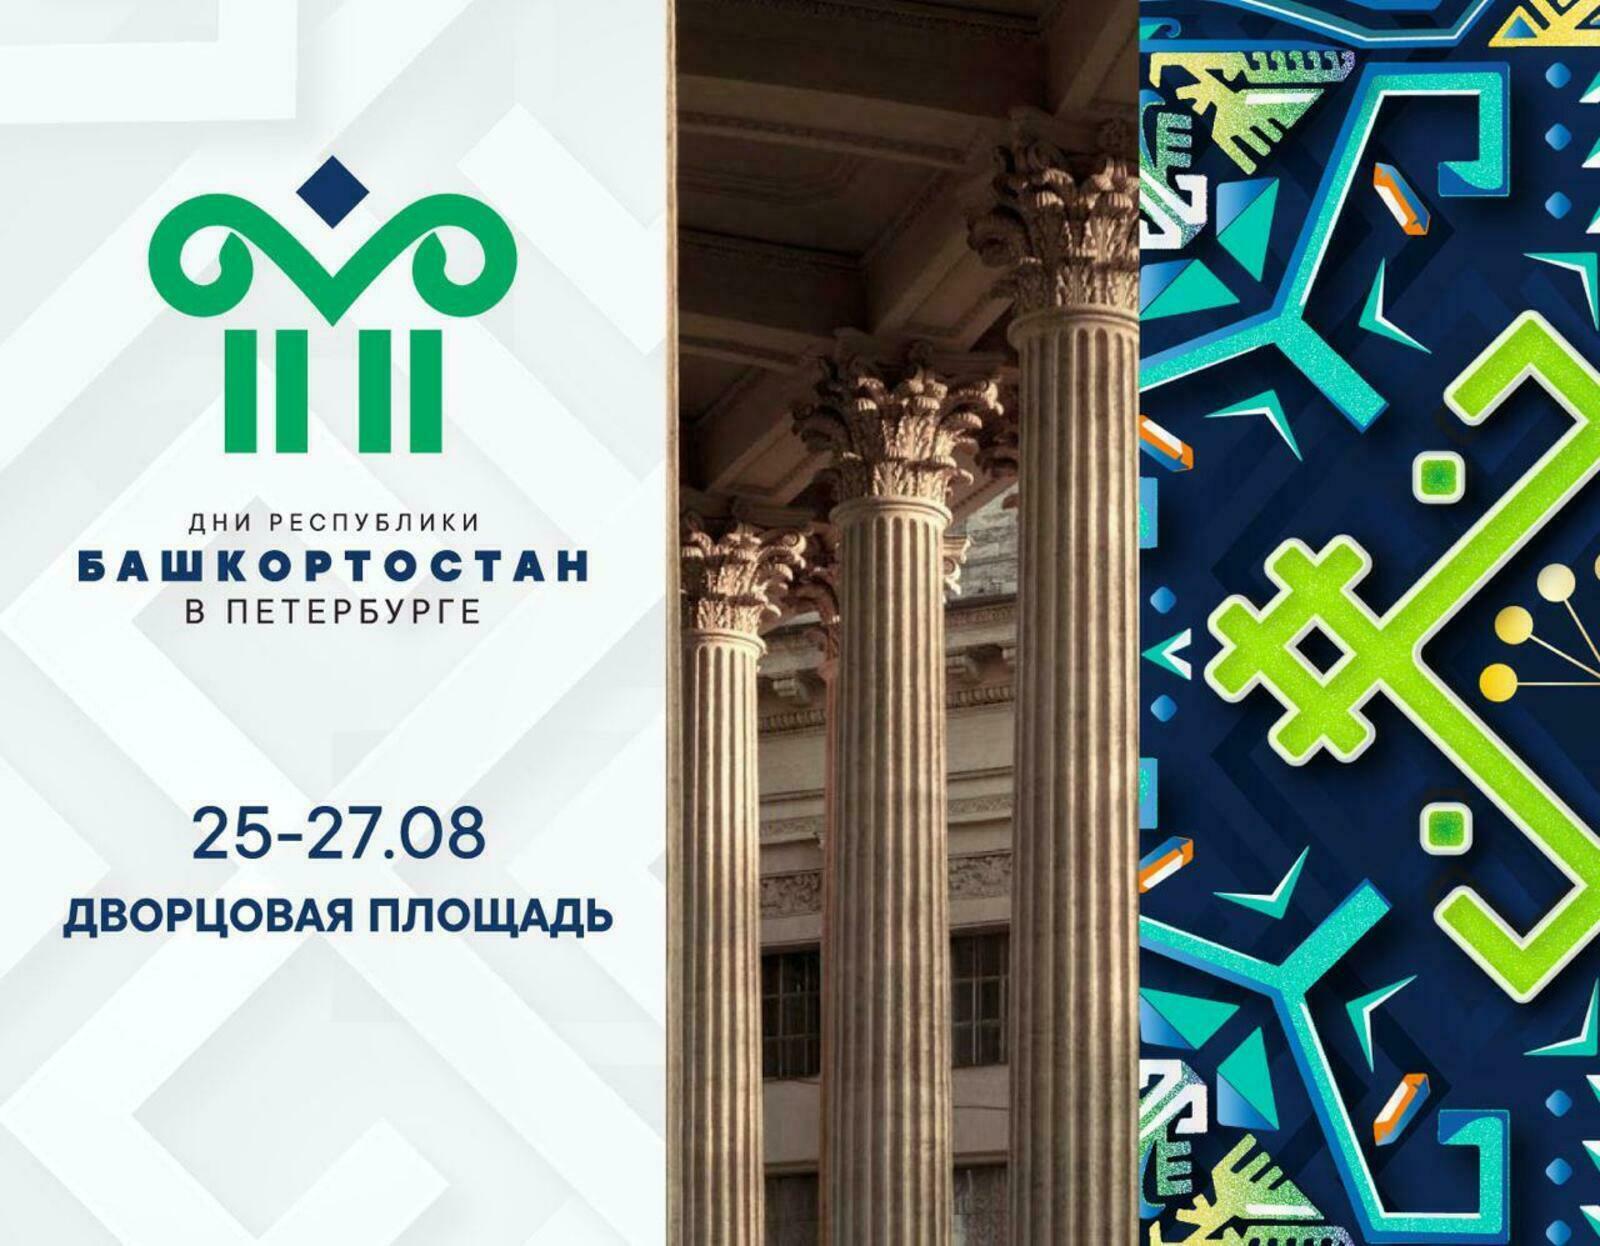 Башкирия представит свои туристические возможности на Днях республики в Санкт-Петербурге